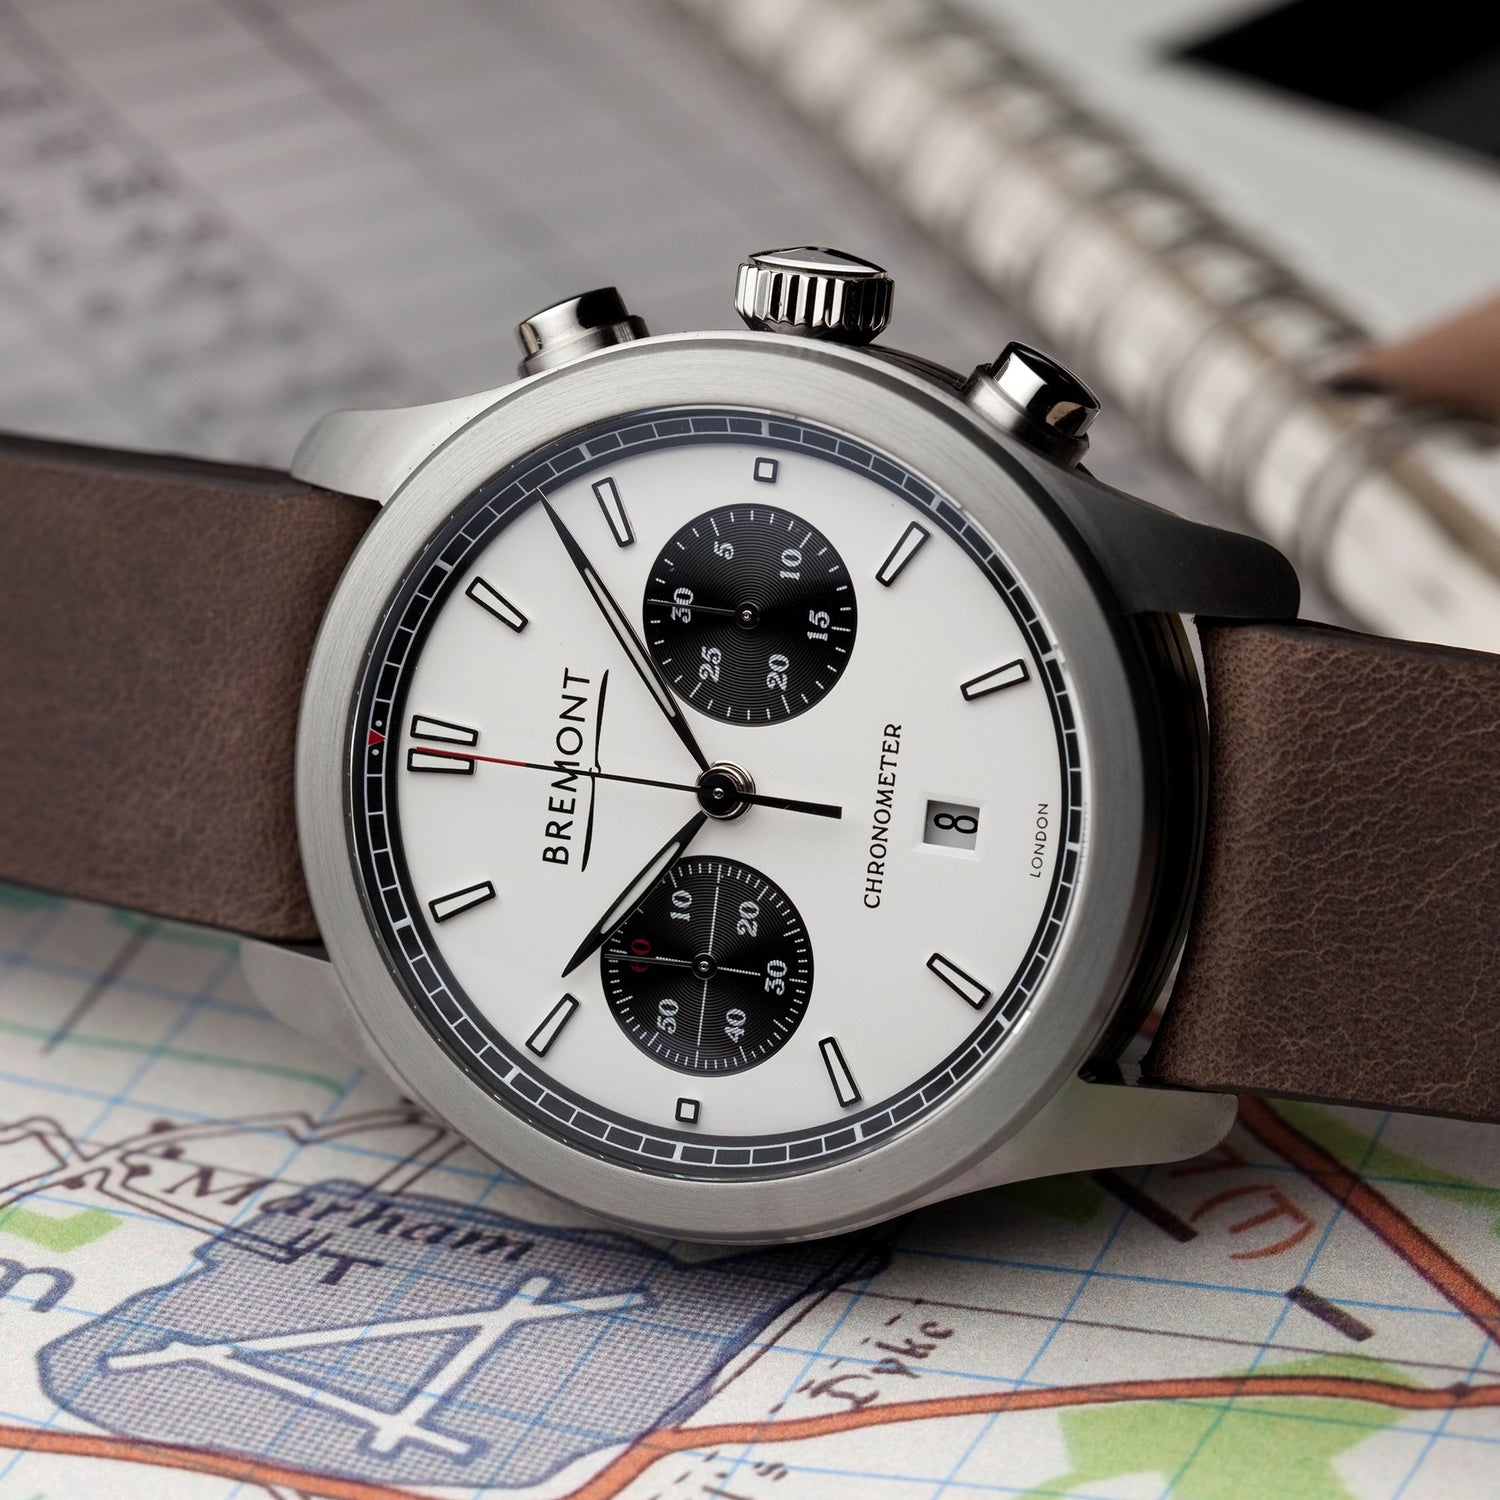 Bremont Chronometers Watches | Mens | ALT1-C ALT1-C